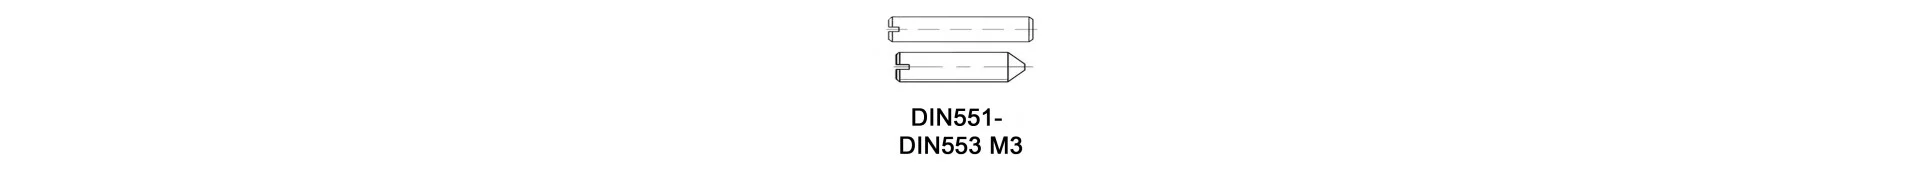 DIN551 - DIN553 M3